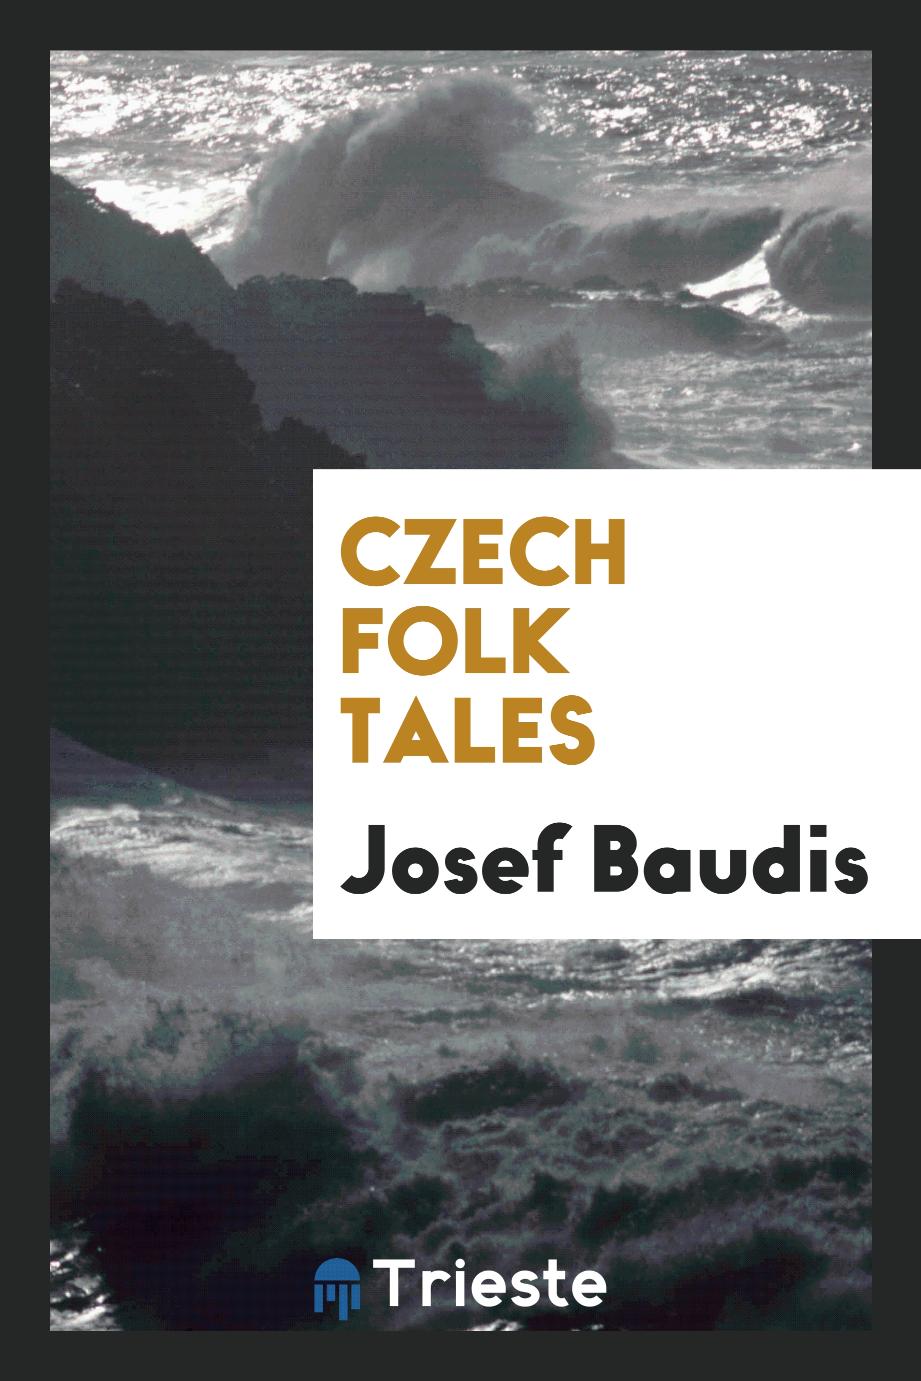 Czech folk tales